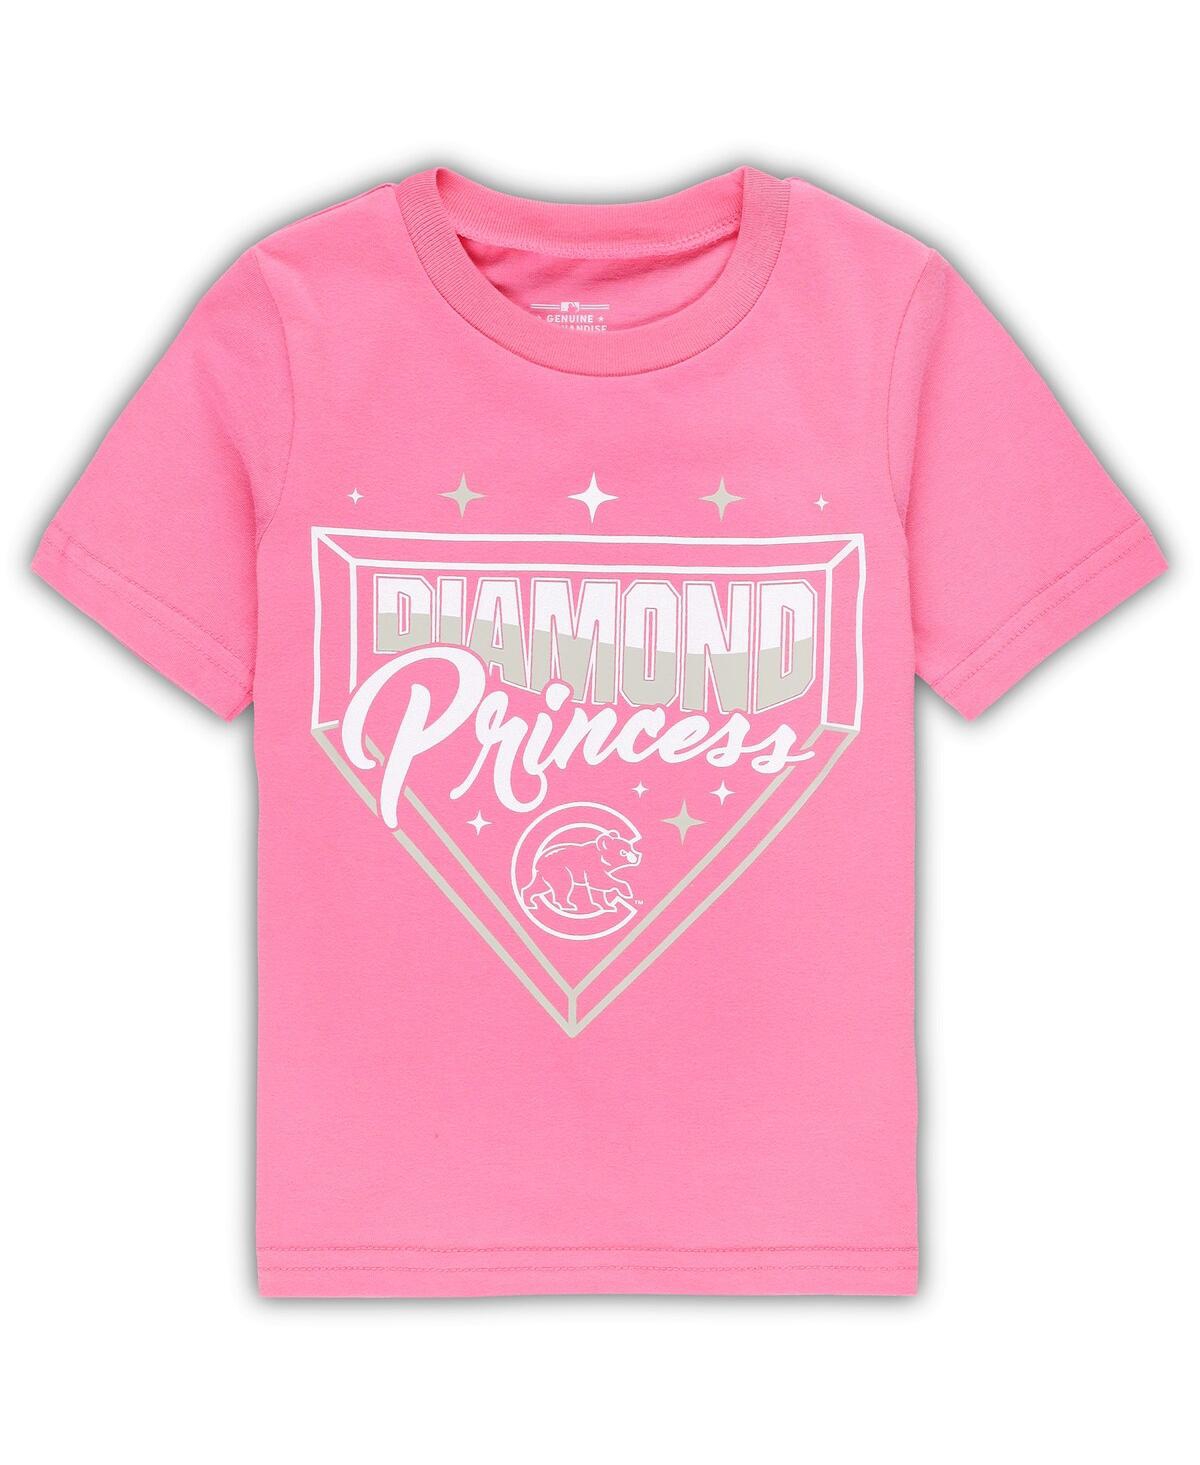 Shop Outerstuff Girls Toddler Pink Chicago Cubs Diamond Princess T-shirt